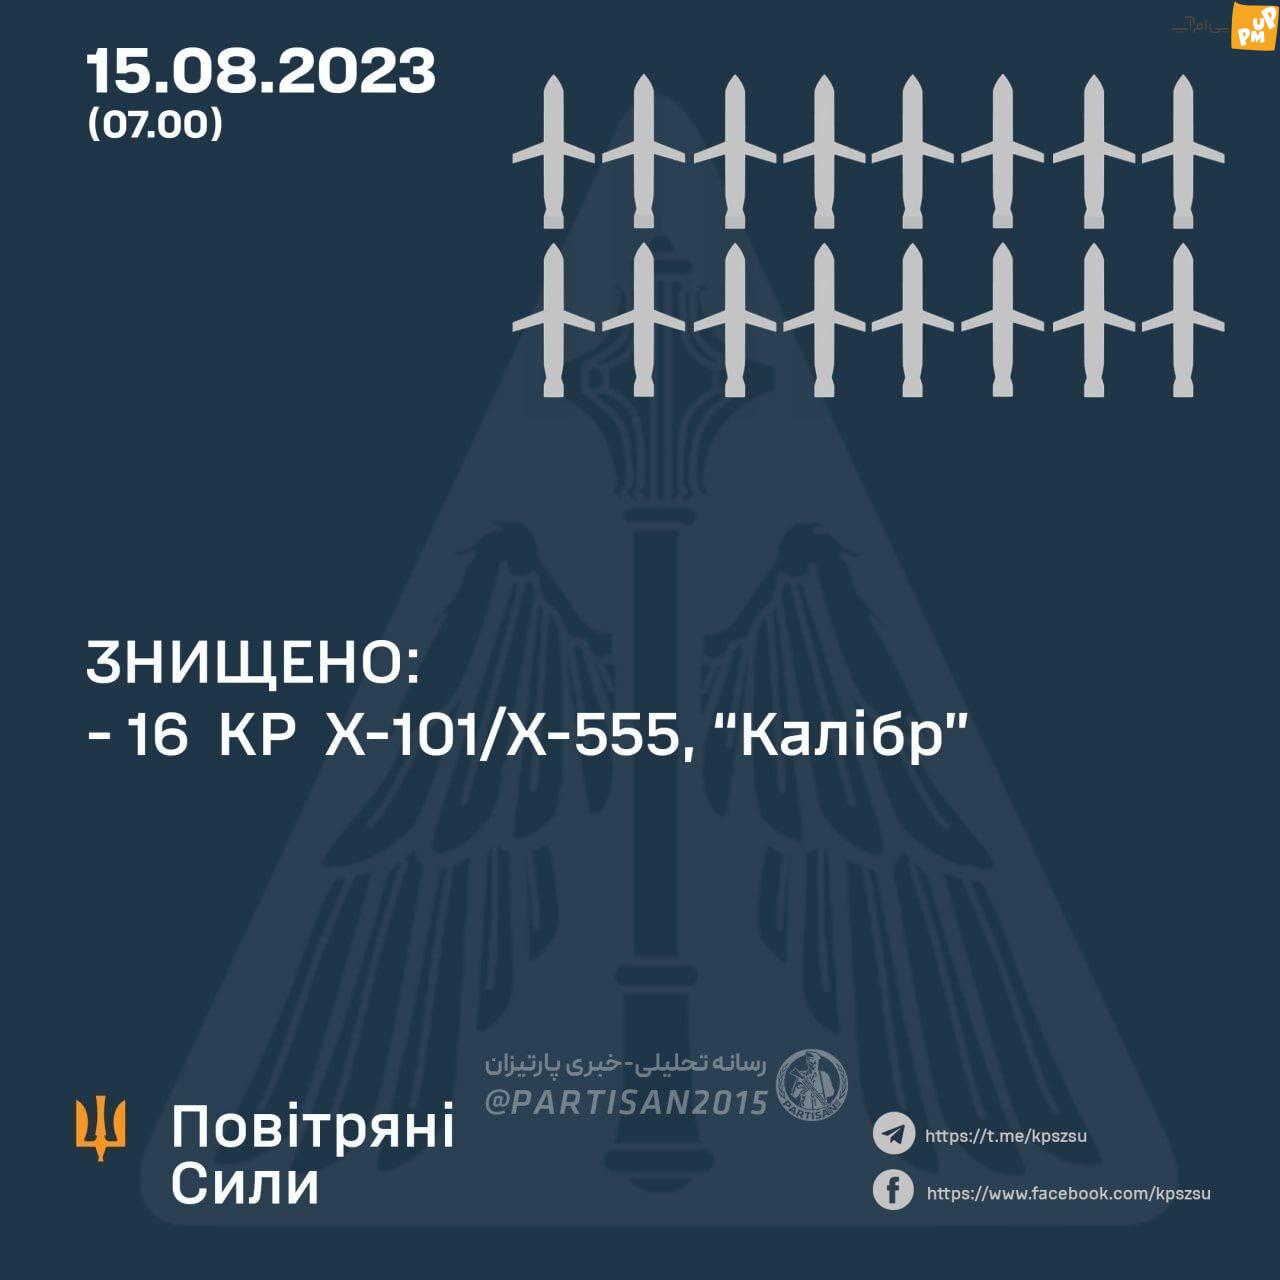 موشک های کروز به صنعت هوافضای اوکراین در دنیپرو اصابت کرد (+ فیلم)